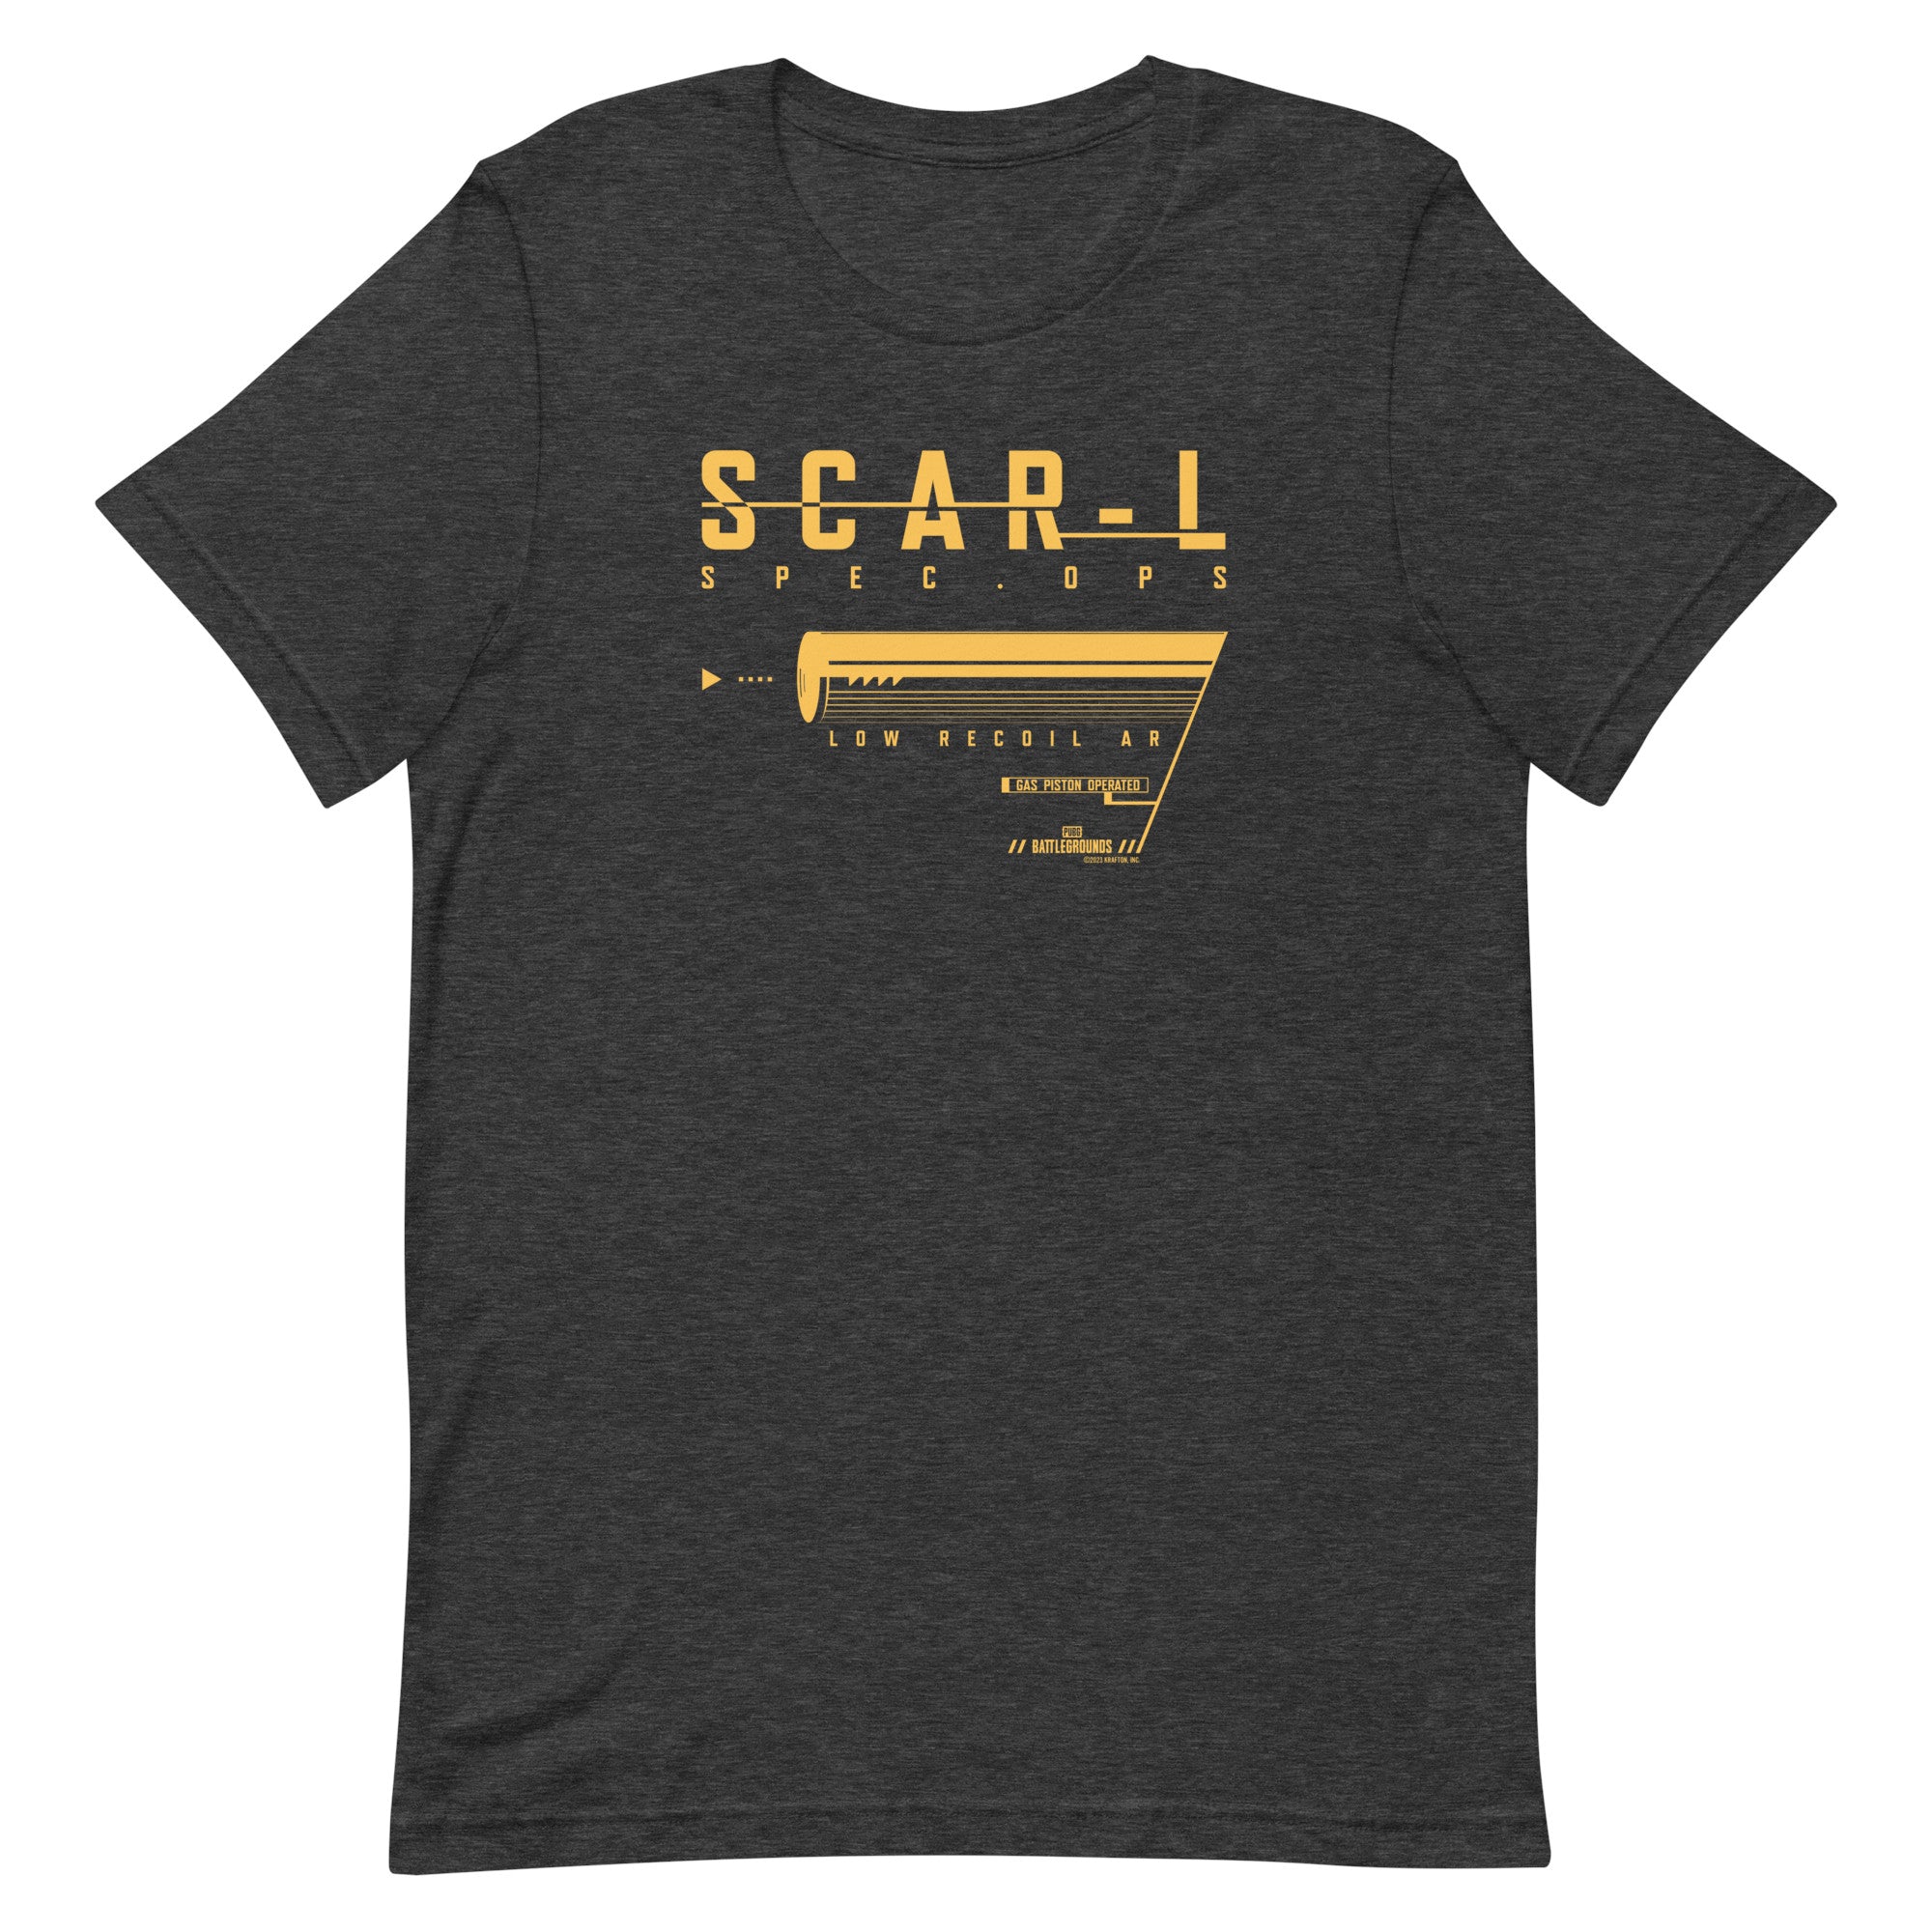 PUBG Wave 3-SCAR L Spec Ops Adult Short Sleeve T-Shirt